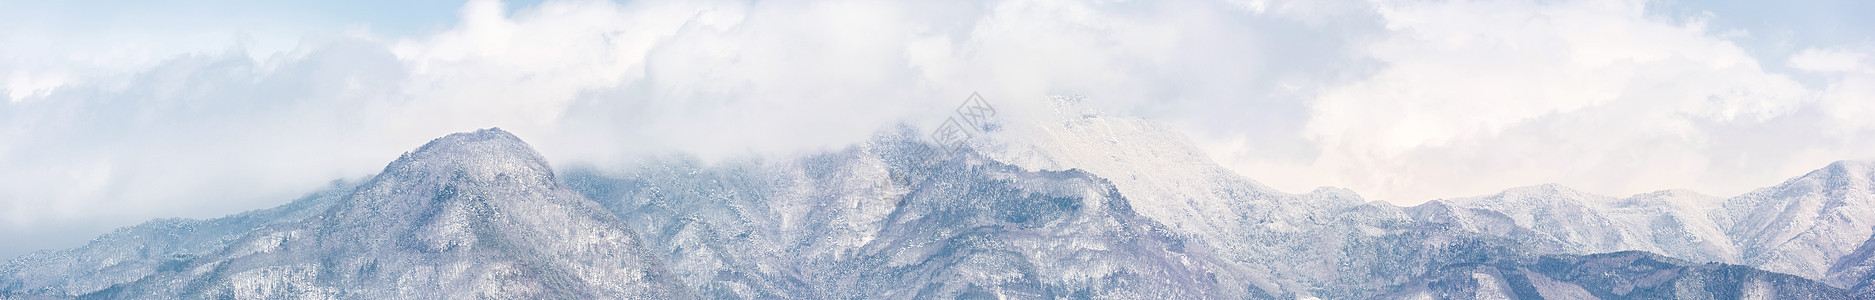 雪山全景,日本阿尔卑斯山景观与蓝天长野图片